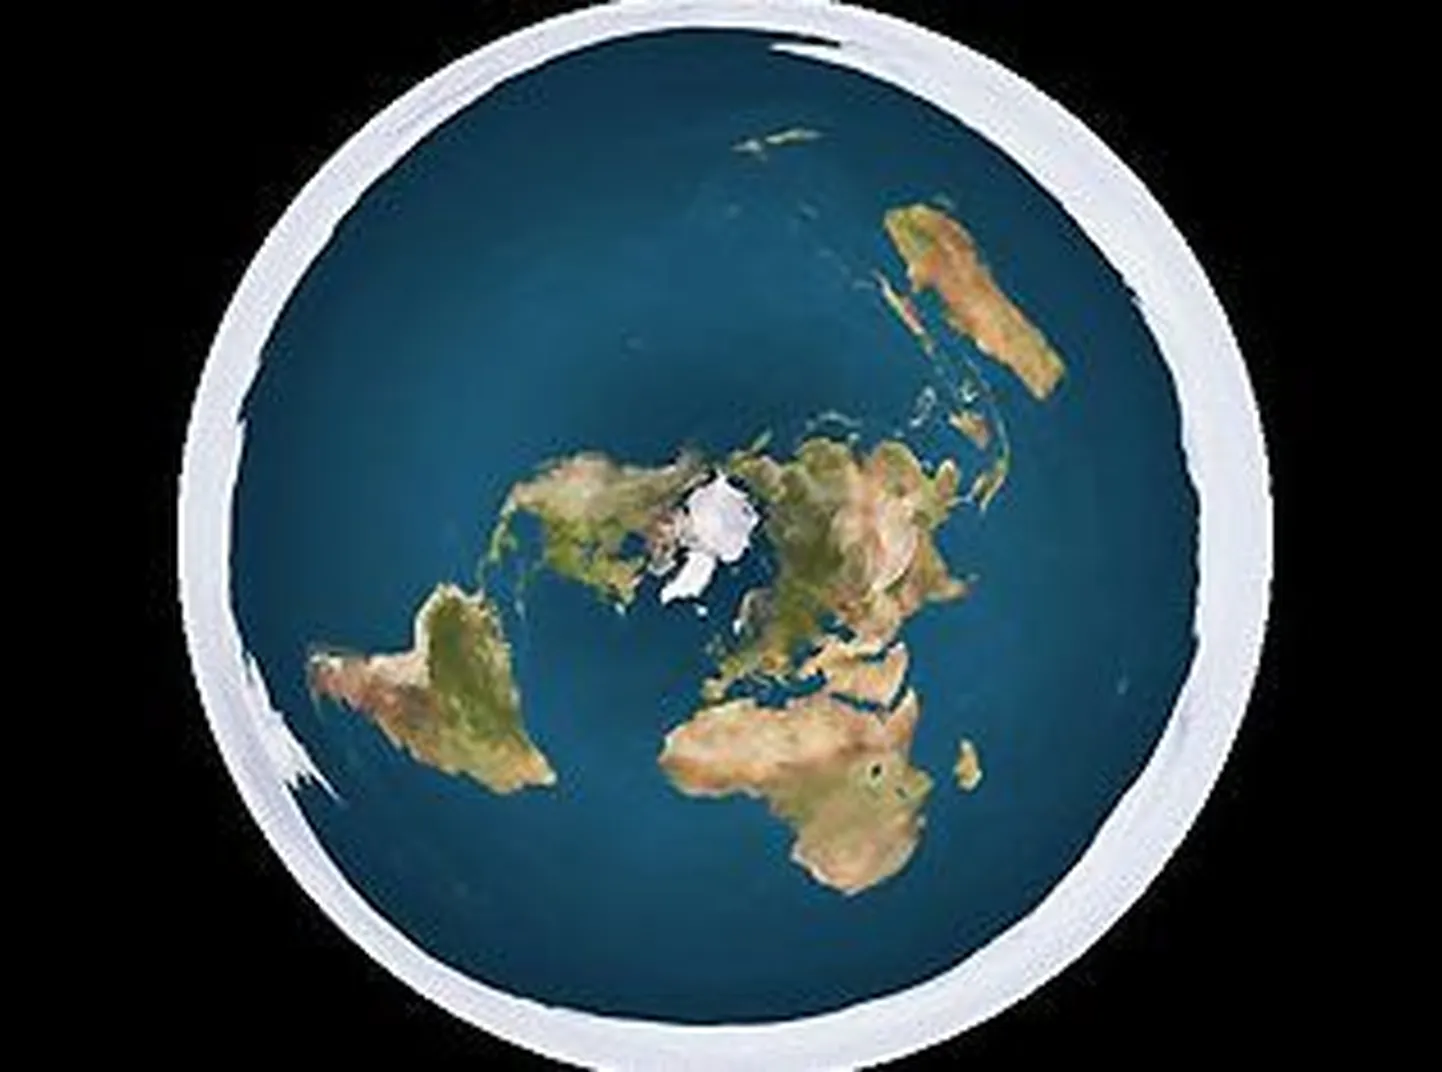 Arvutijoonis lapikust Maakerast. Keskel on Arktika ja välisel äärel Antarktika jääväljad, mis takistavd üle ääre kukkumist